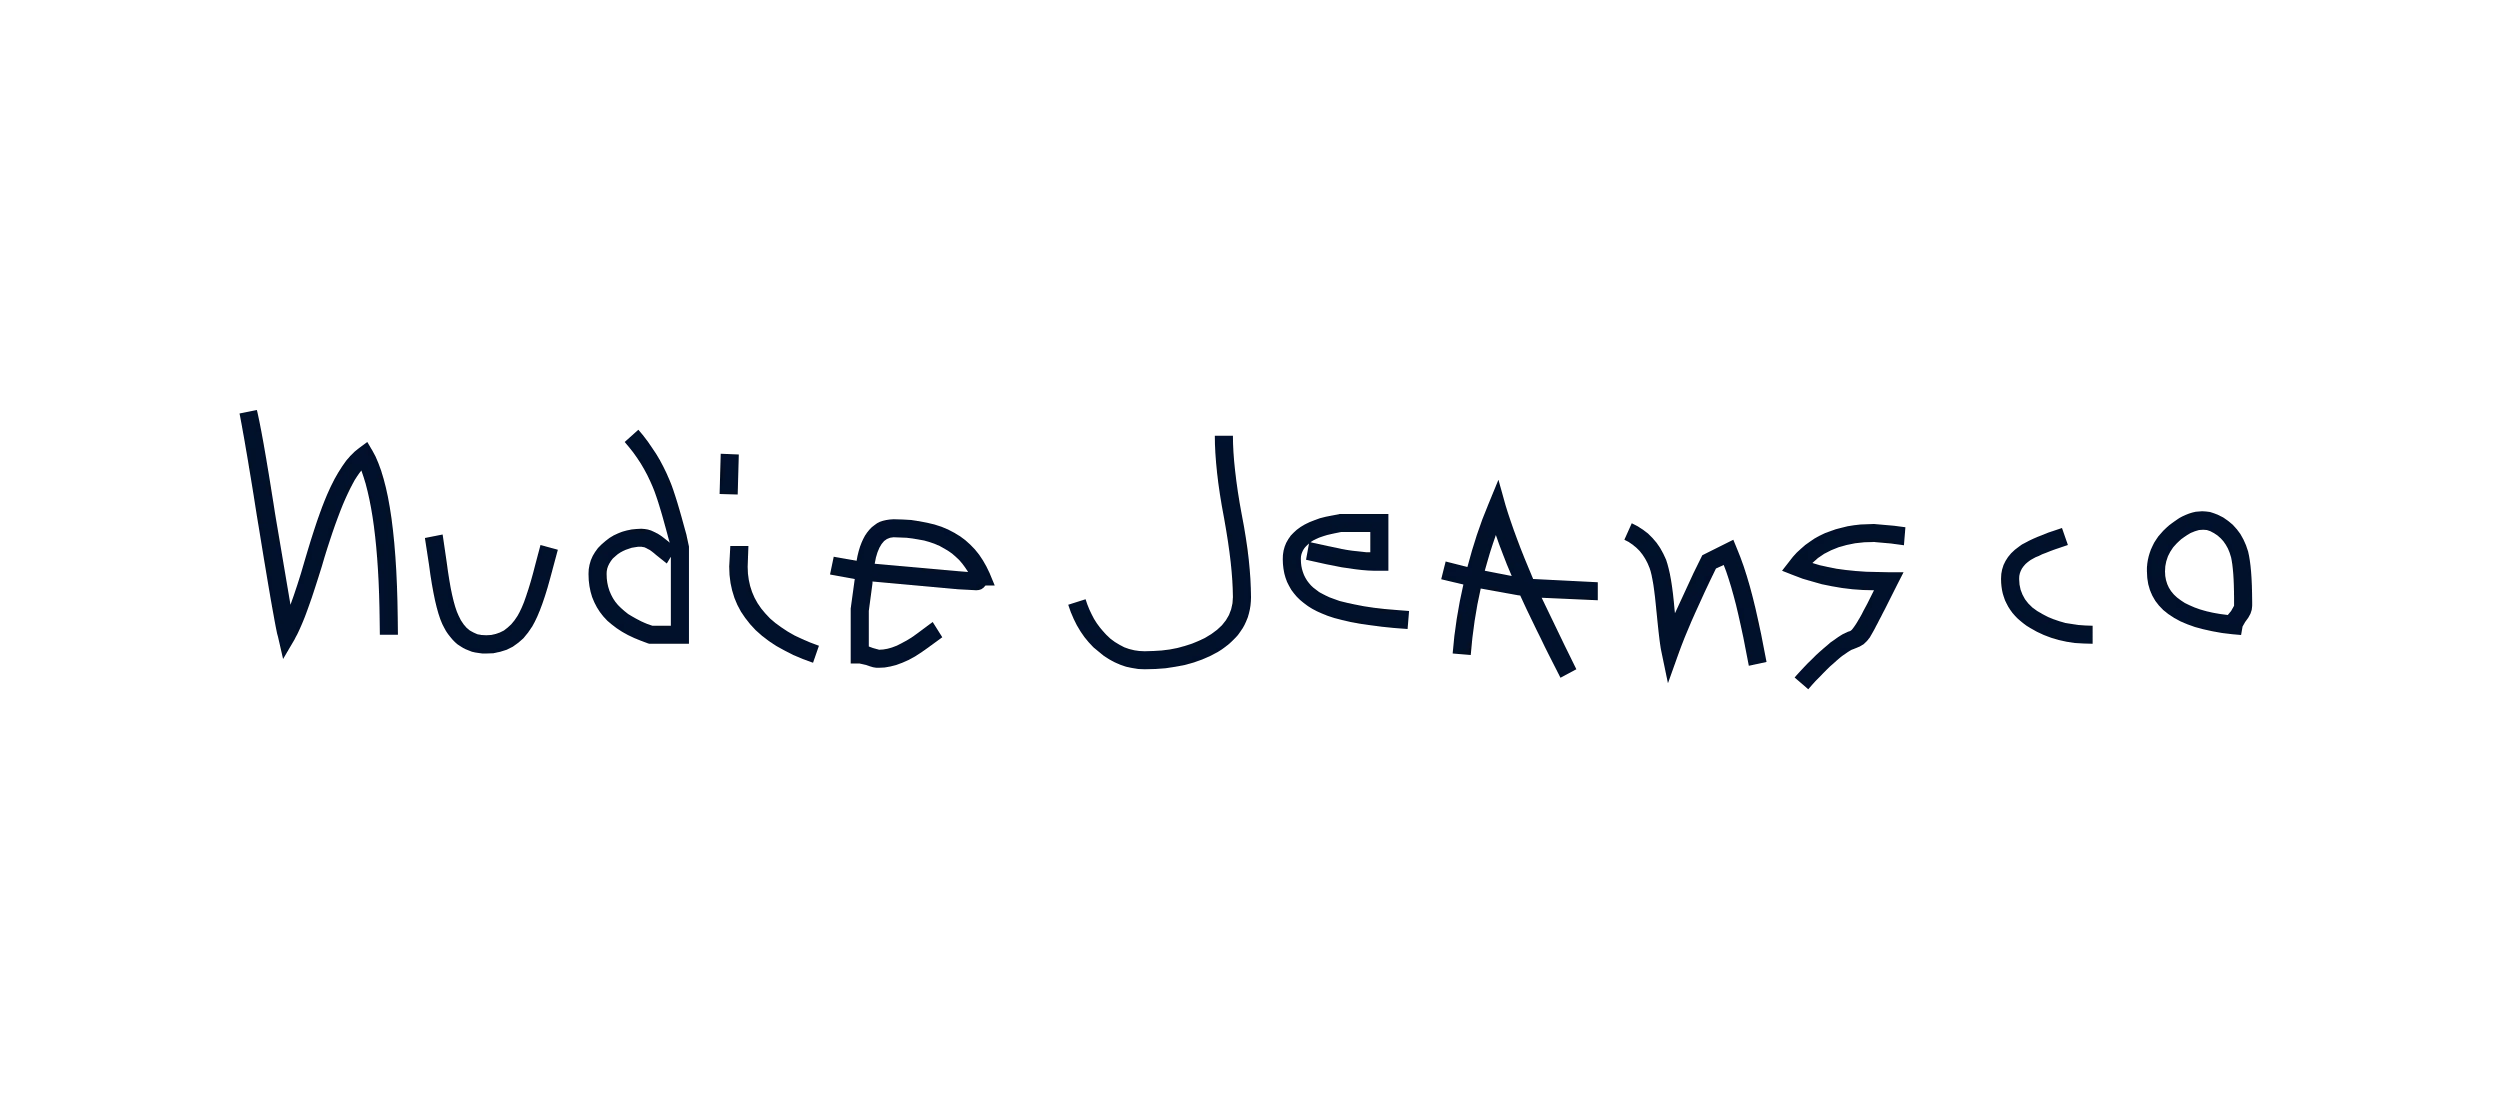 Nudie & Jeans